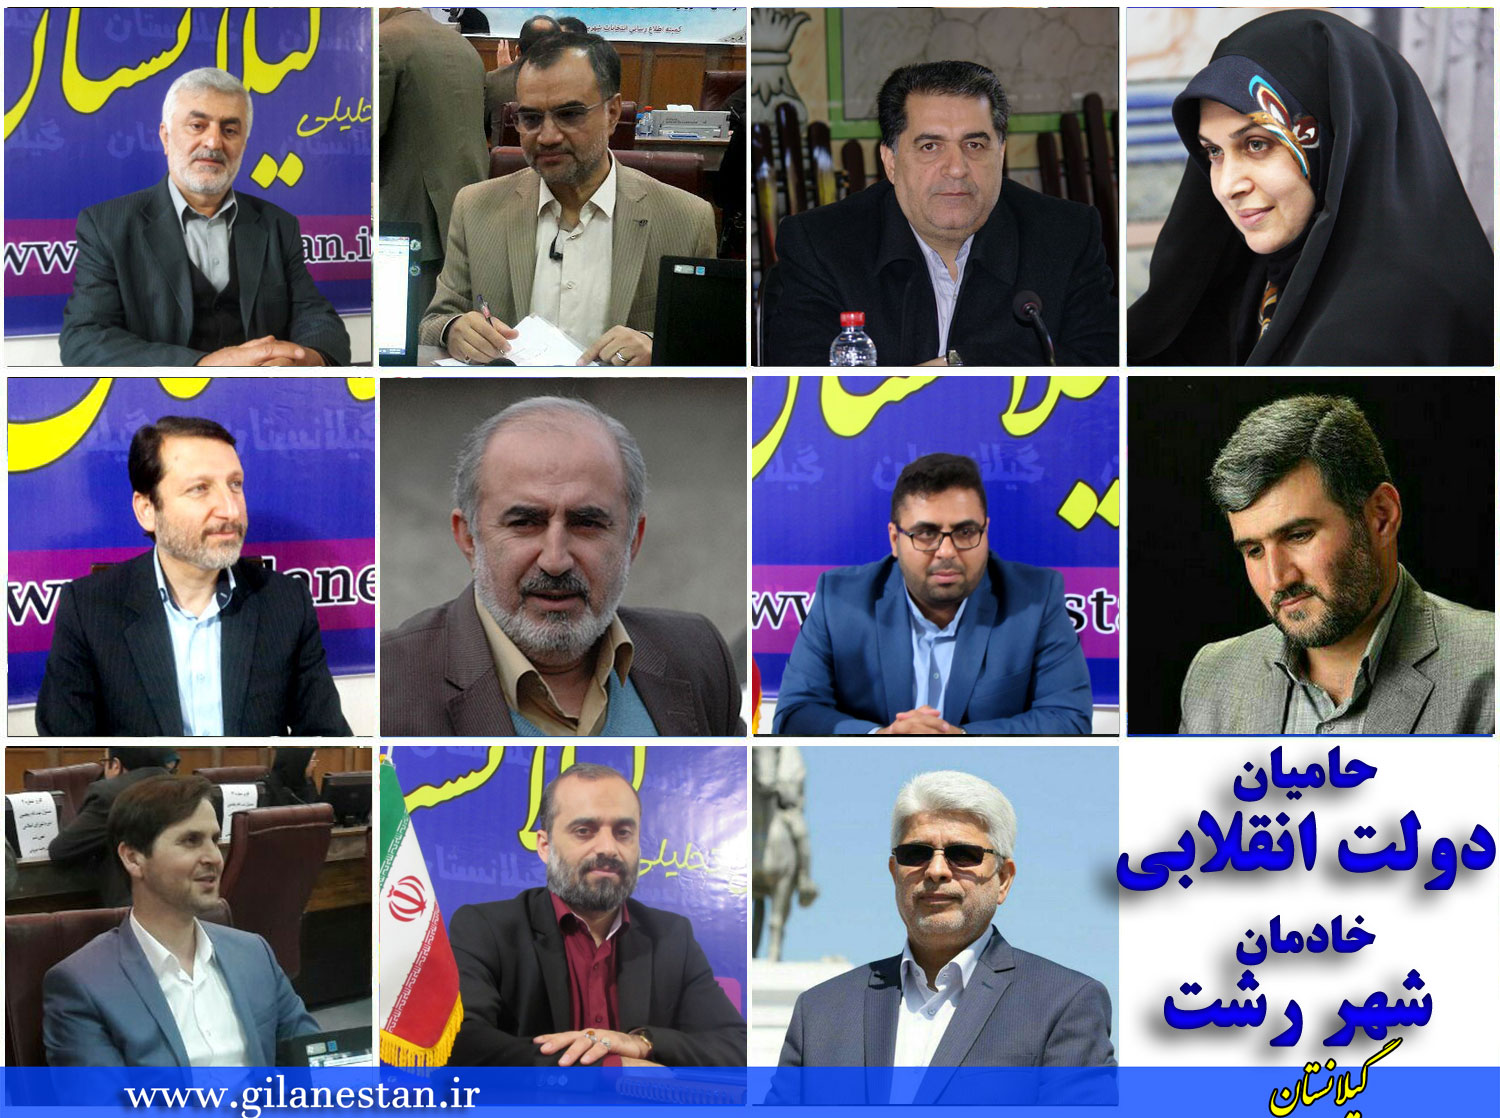 لیست 11 نفره نیروهای ارزشی و انقلابی شهر رشت منتشر شد + اسامی و تصاویر